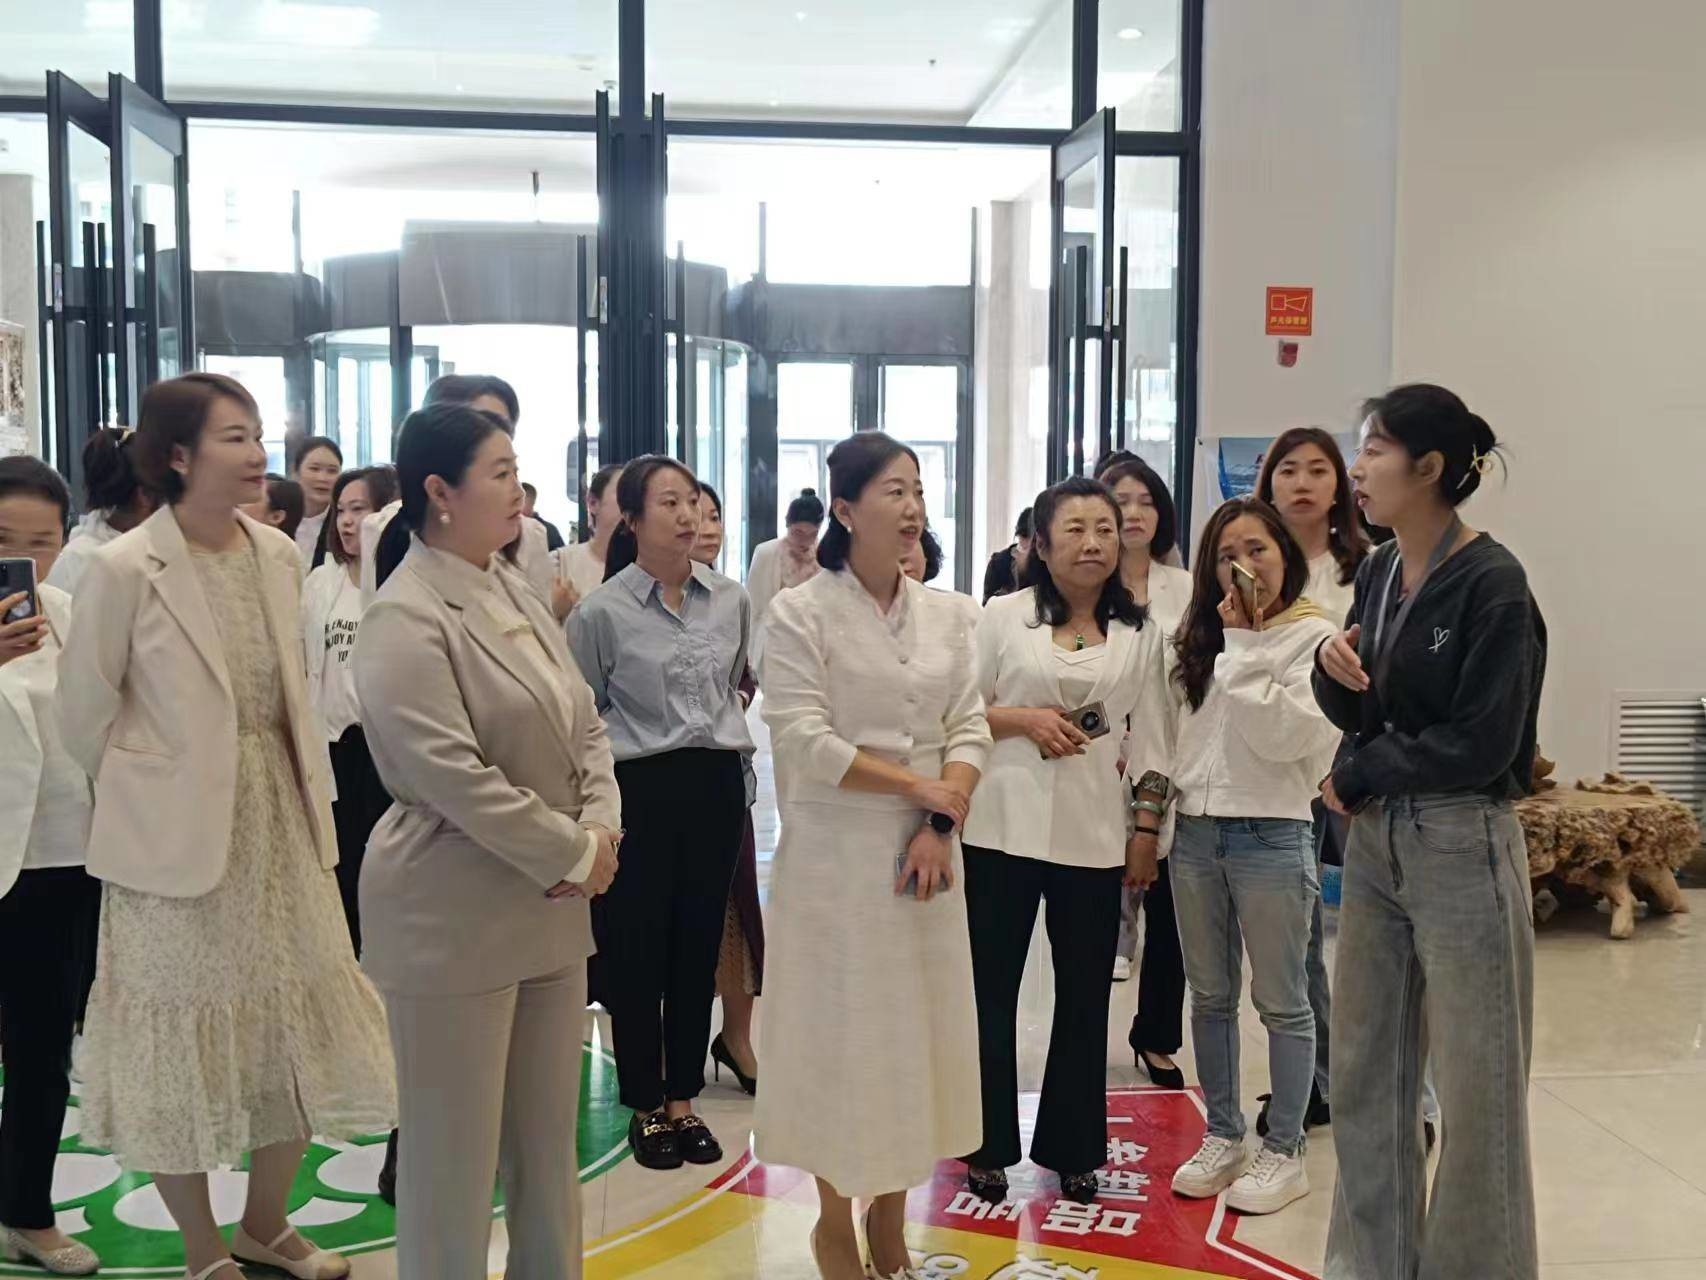 延吉市妇联组织开展跨境电商学习观摩活动